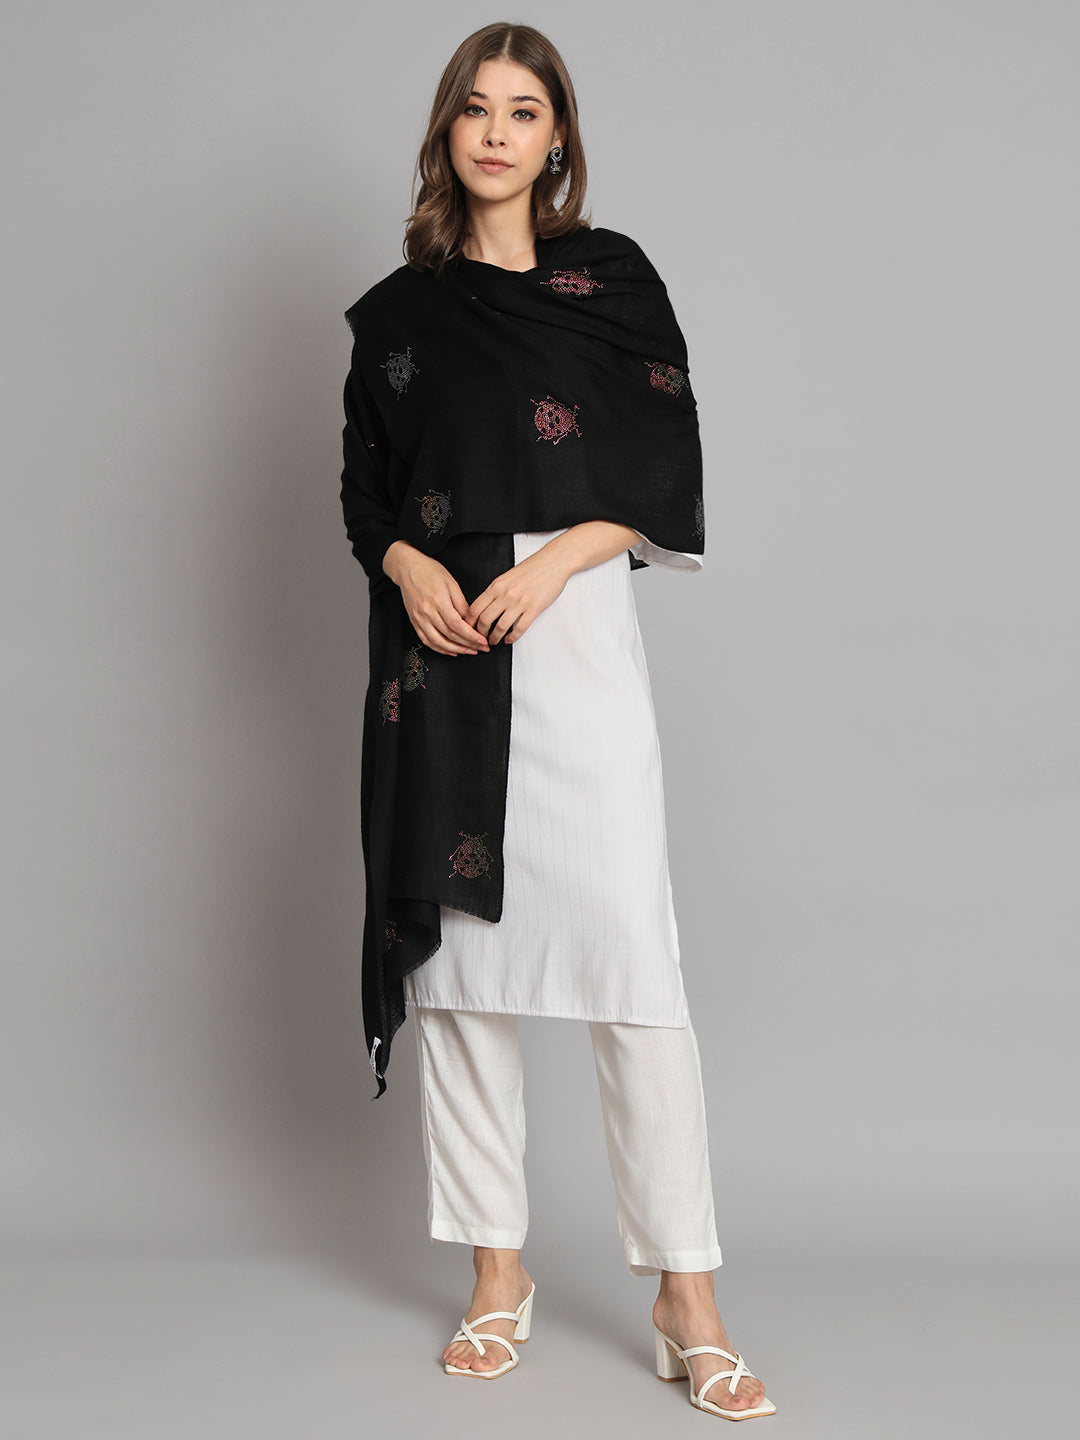 kashmiri shawl for ladies,woolen shawl for winter